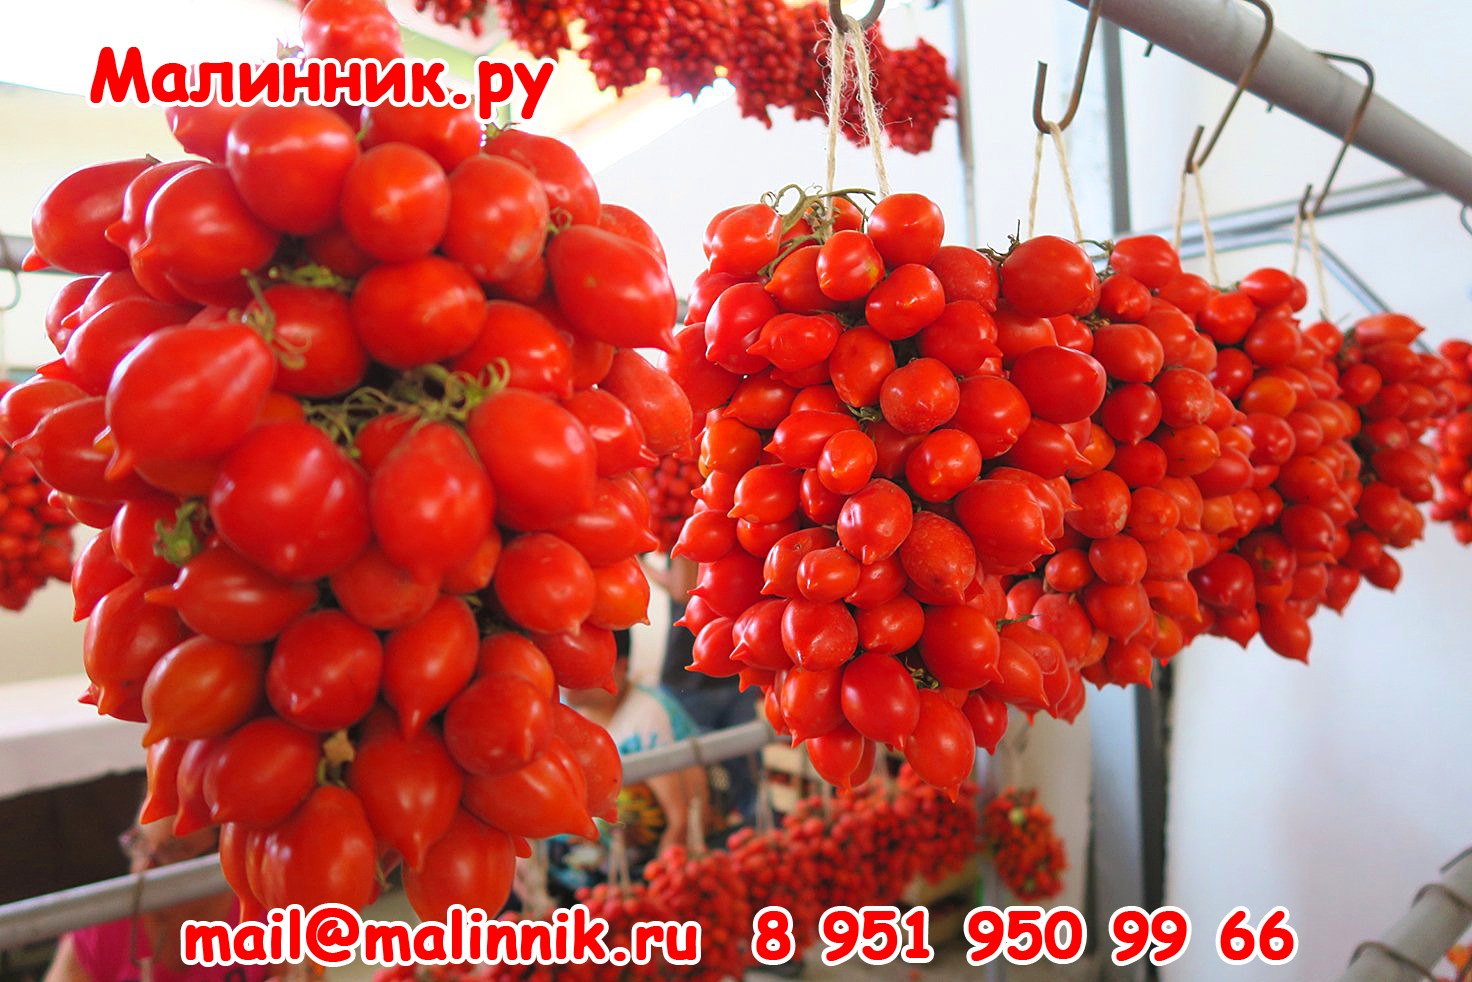 Сорта томатов для выращивания в открытом грунте